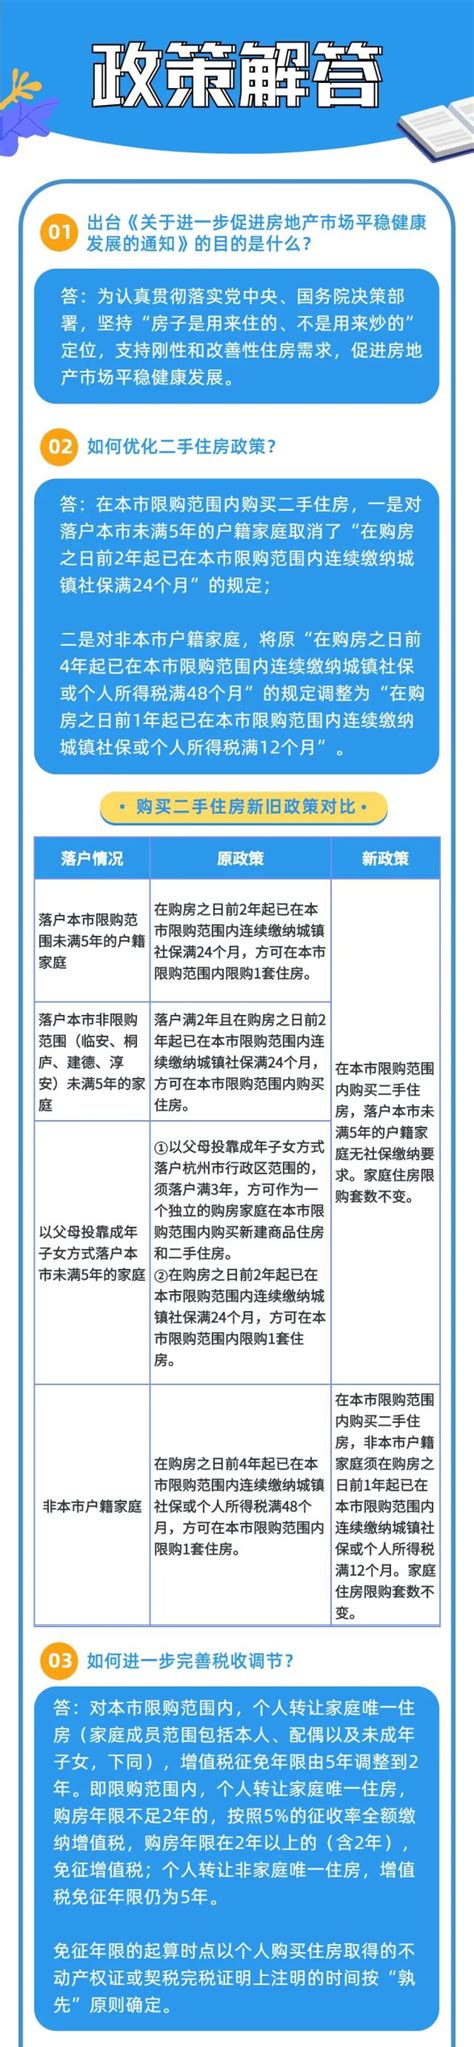 杭州房产政策重大调整！符合条件的三孩家庭，限购住房增加1套 - 杭+新闻客户端